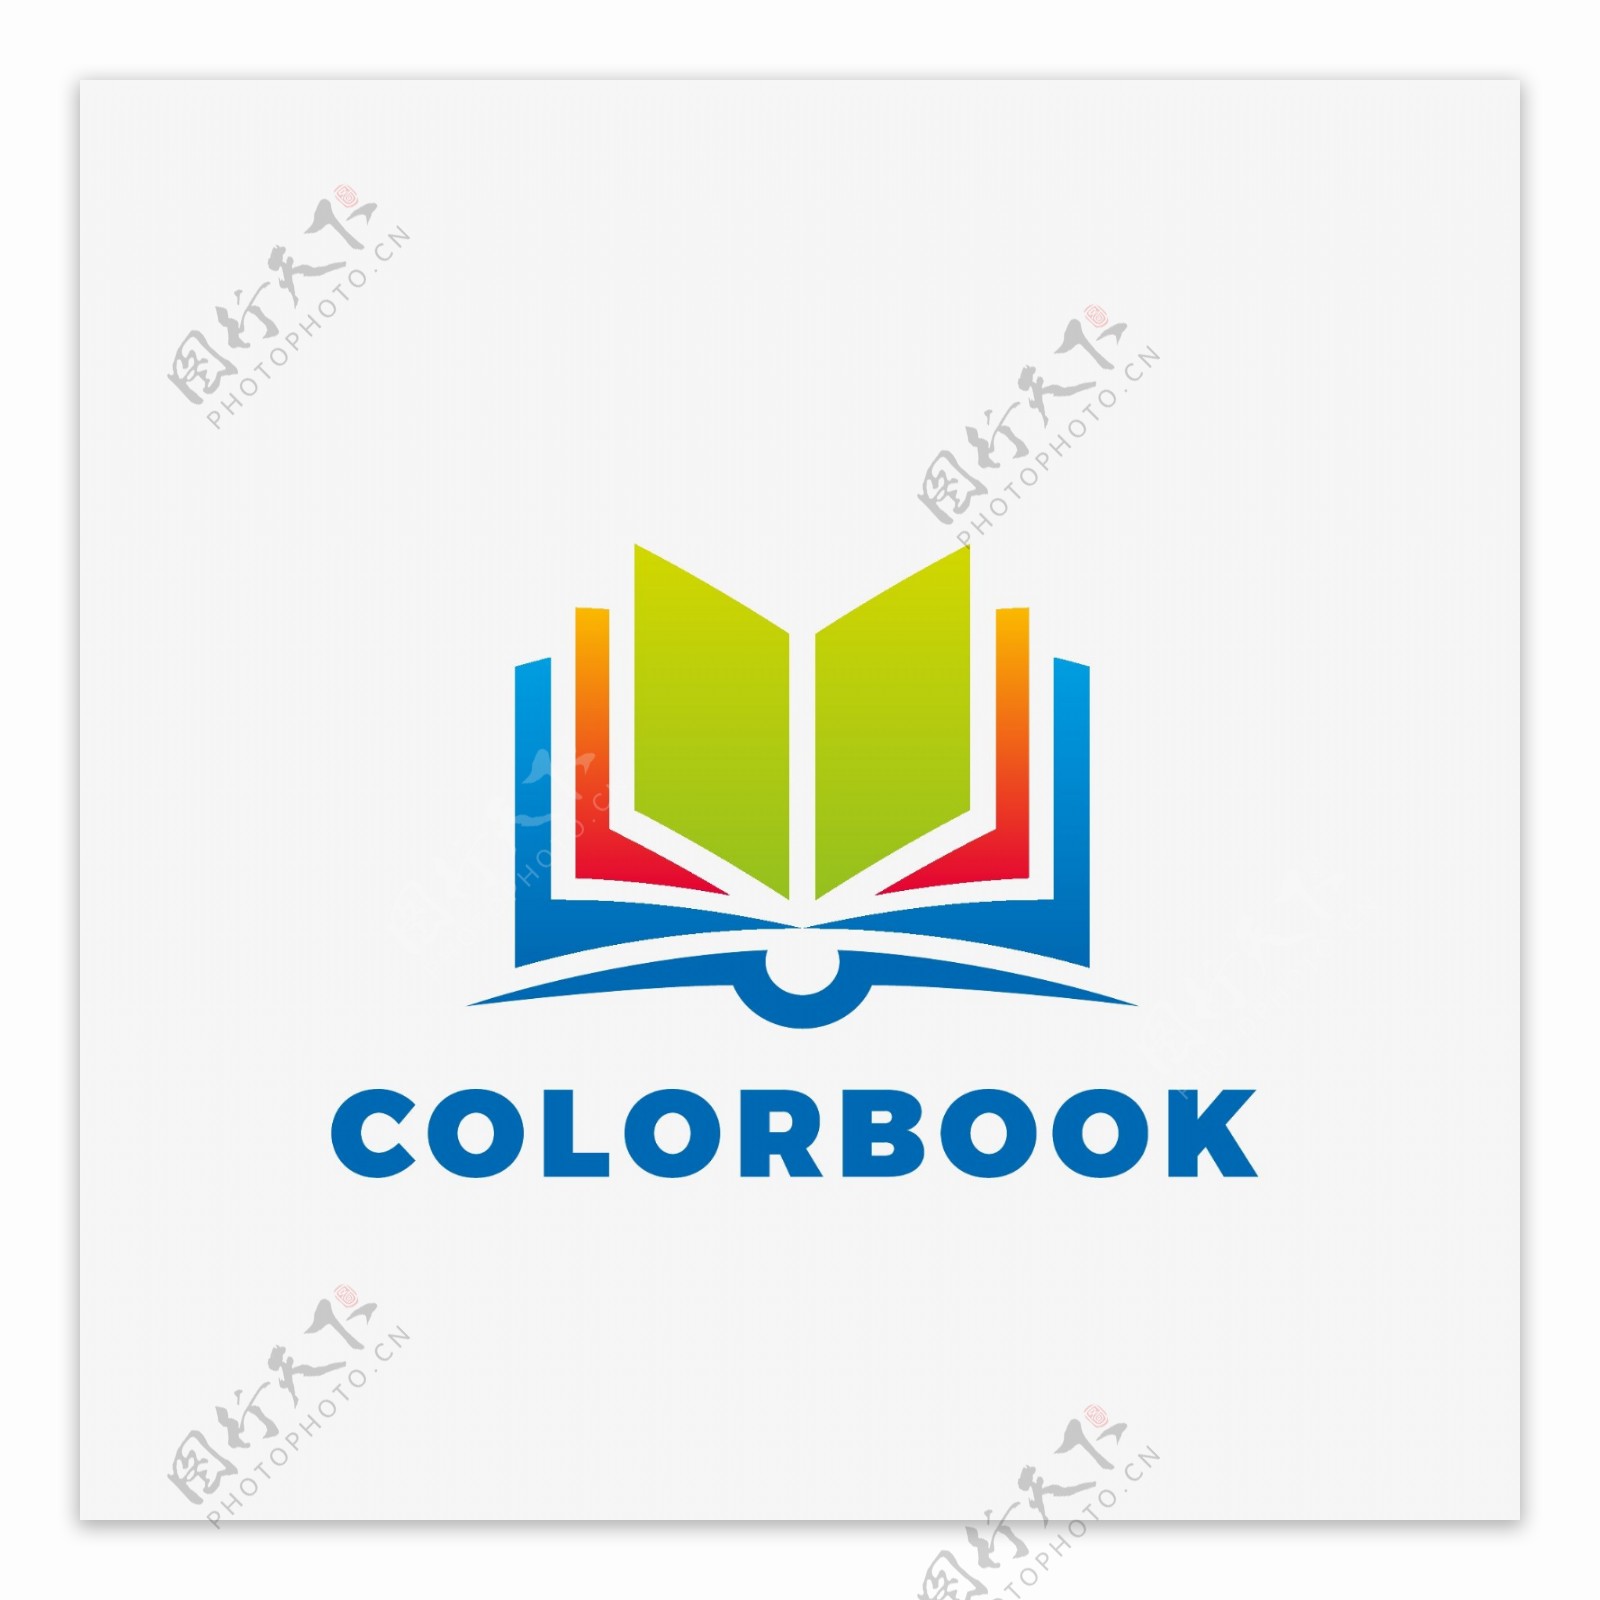 翻开的书阅读器logo标志图标